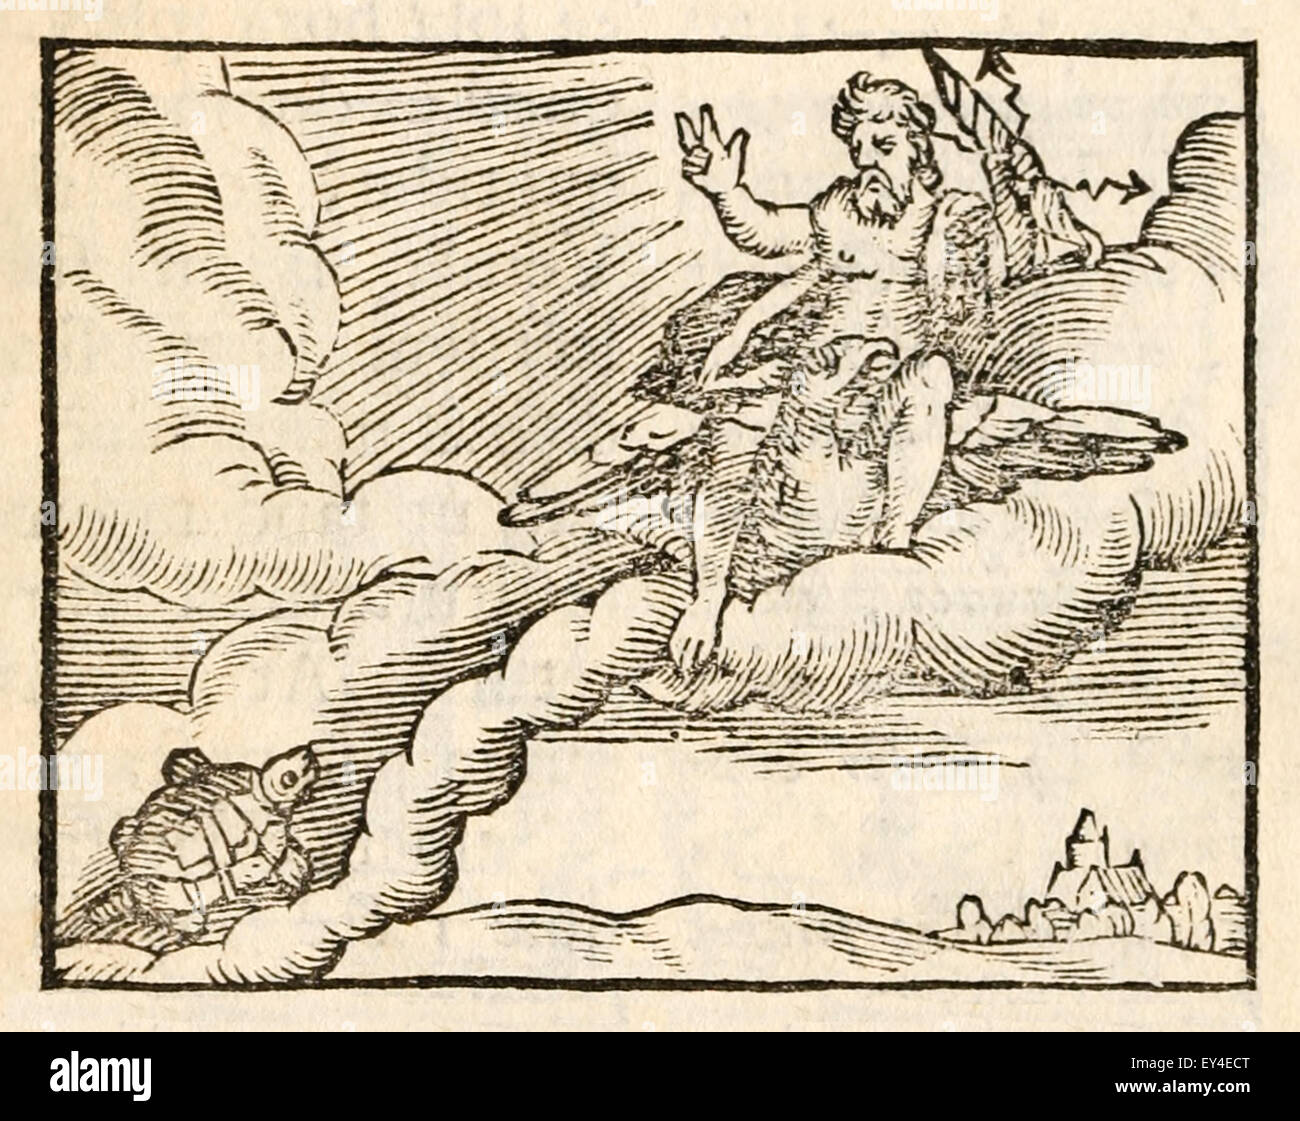 ' La tartaruga e gli uccelli' del XVII secolo stampa xilografia illustrante Esopo favole. Vedere la descrizione per maggiori informazioni. Foto Stock